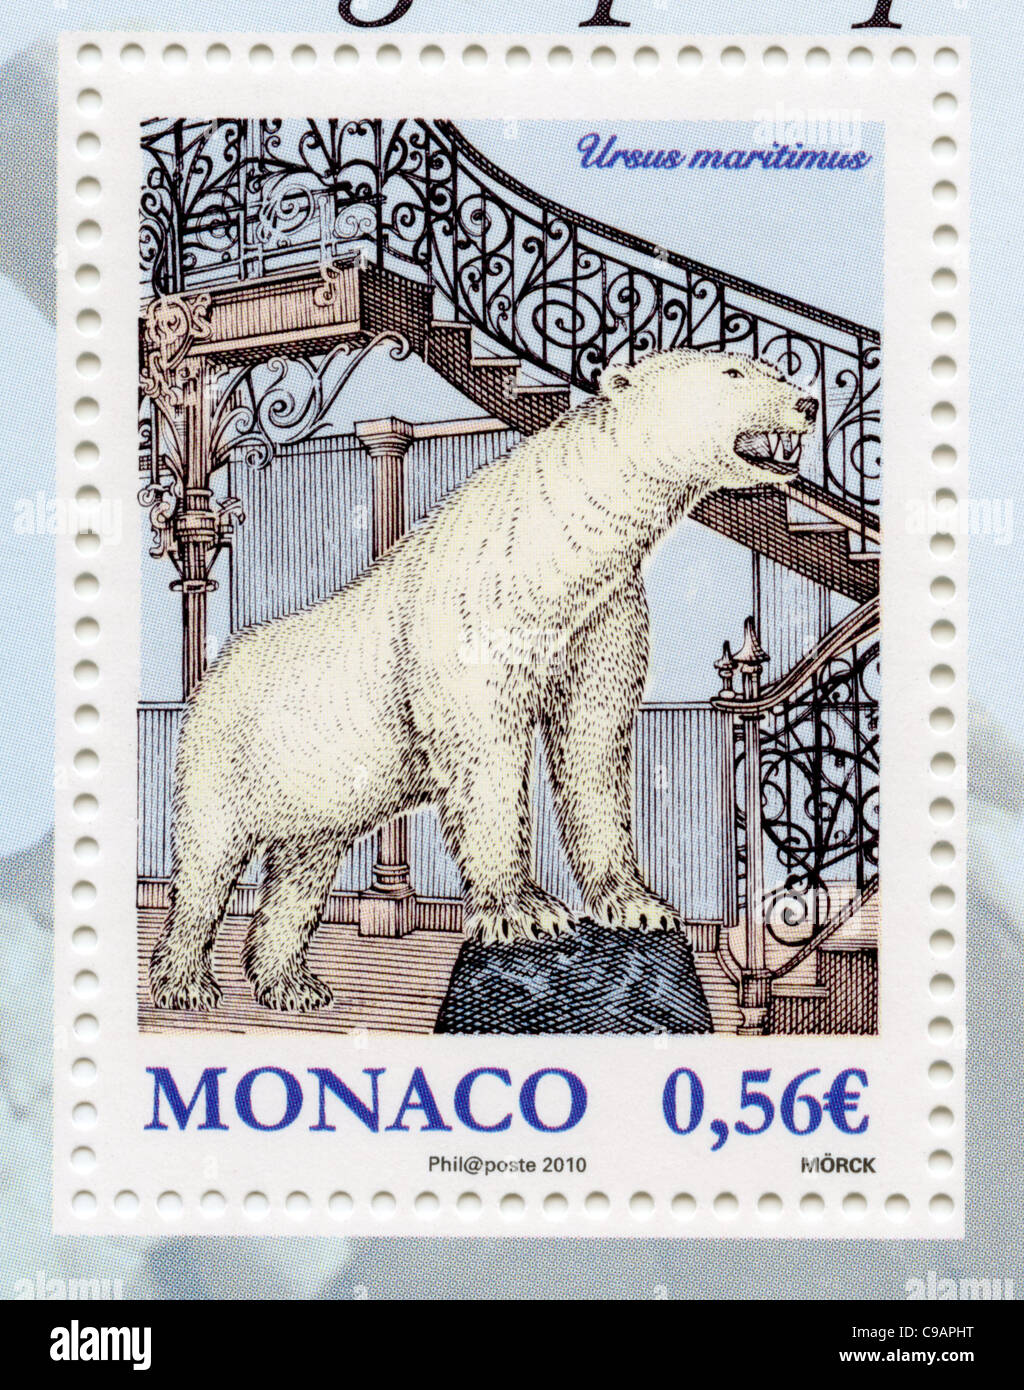 Monaco postage stamp Stock Photo